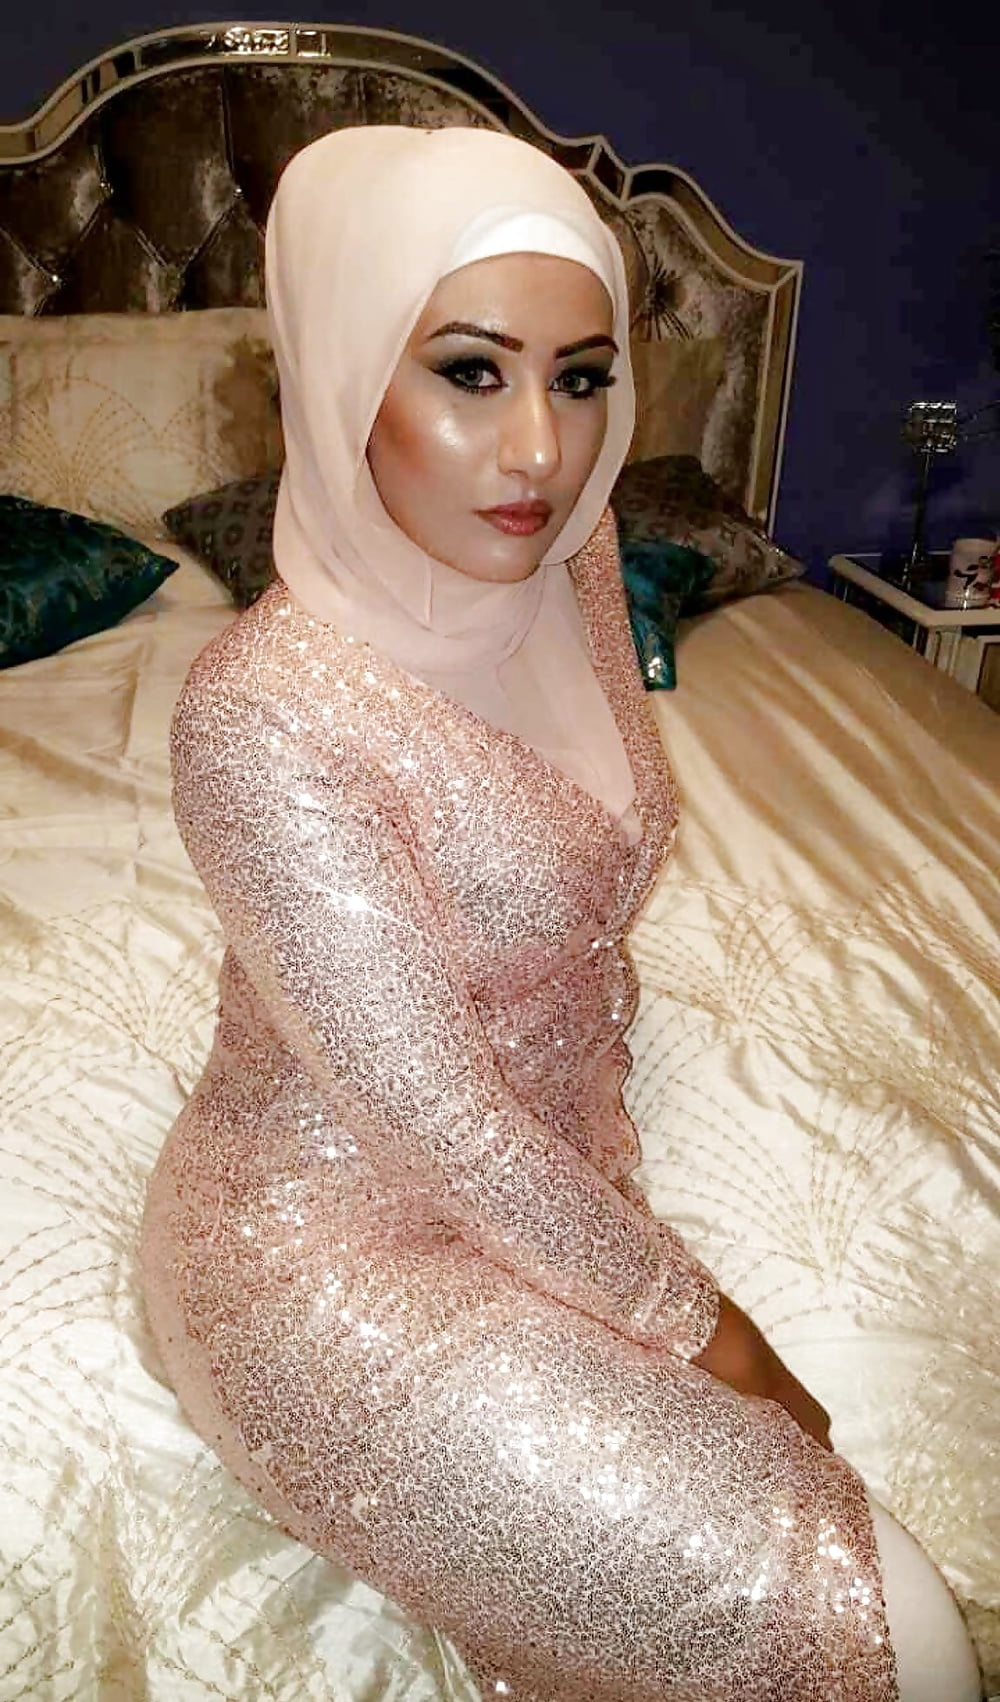 Sex Gallery Beurette arab hijab muslim 55